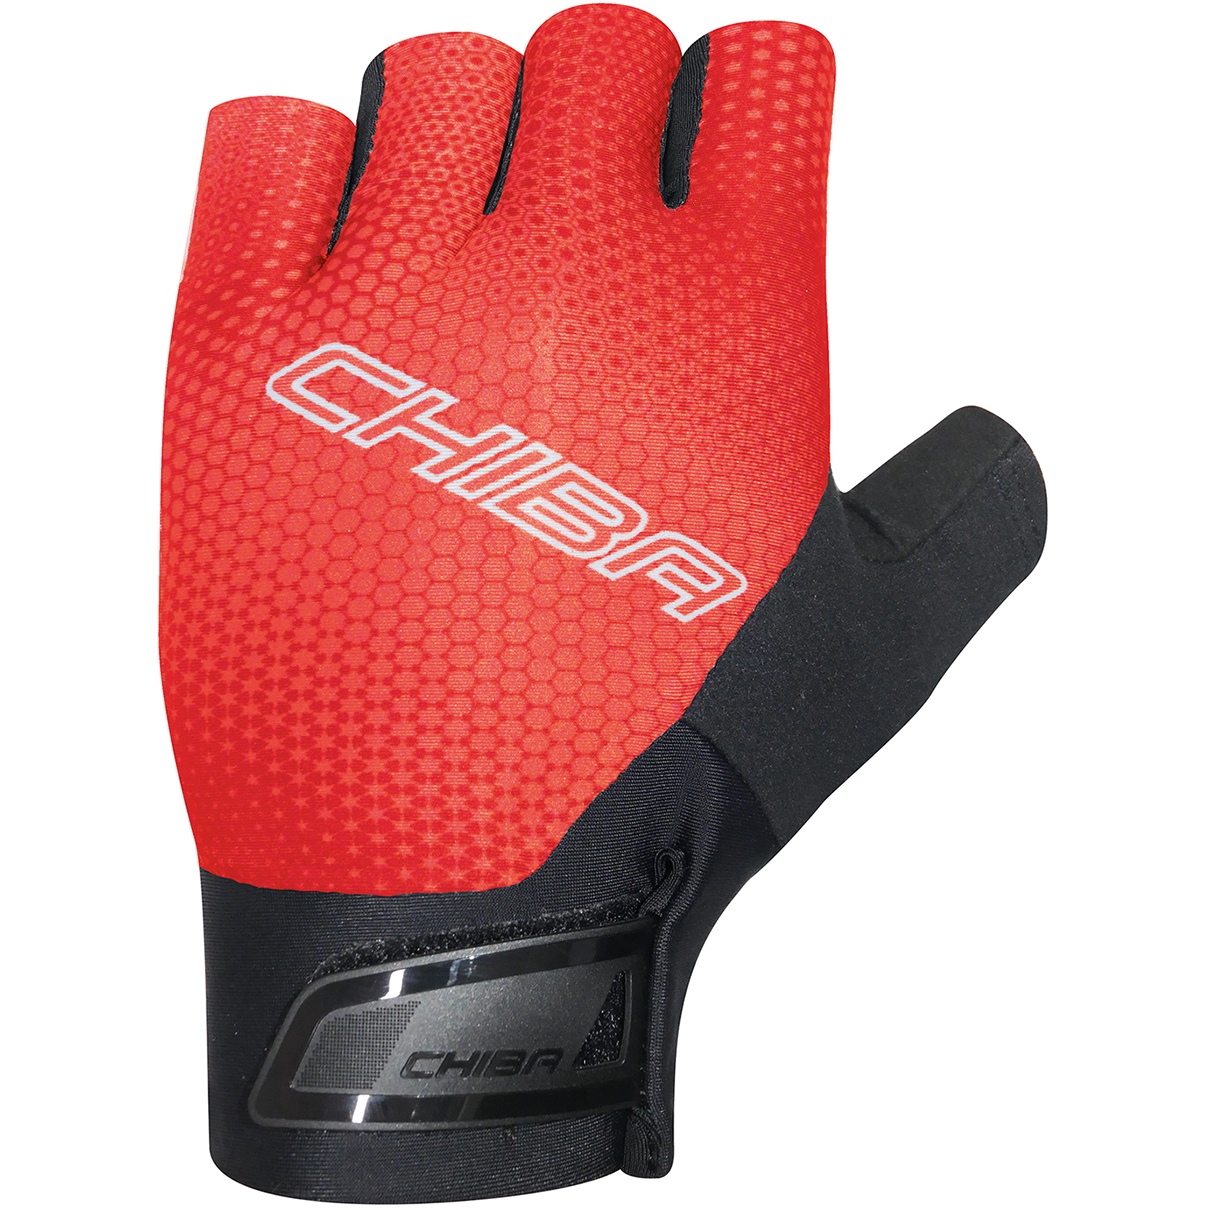 Produktbild von Chiba Ergo Superlight Kurzfinger-Handschuhe - rot